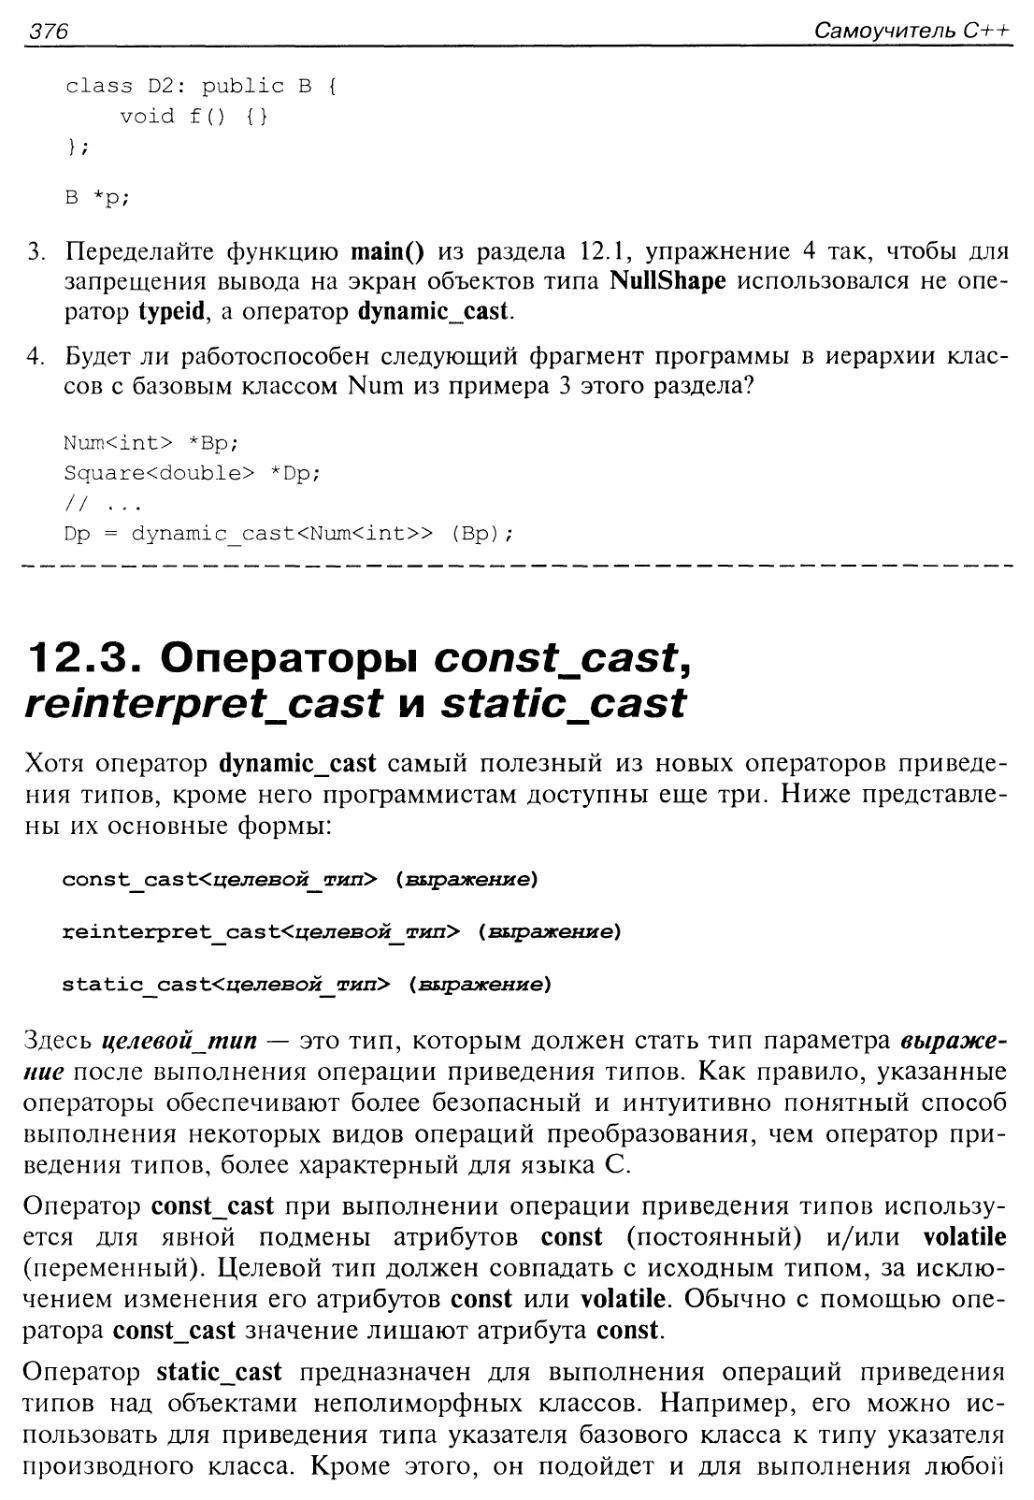 12.3. Операторы const_cast, reinterpret_cast и static_cast